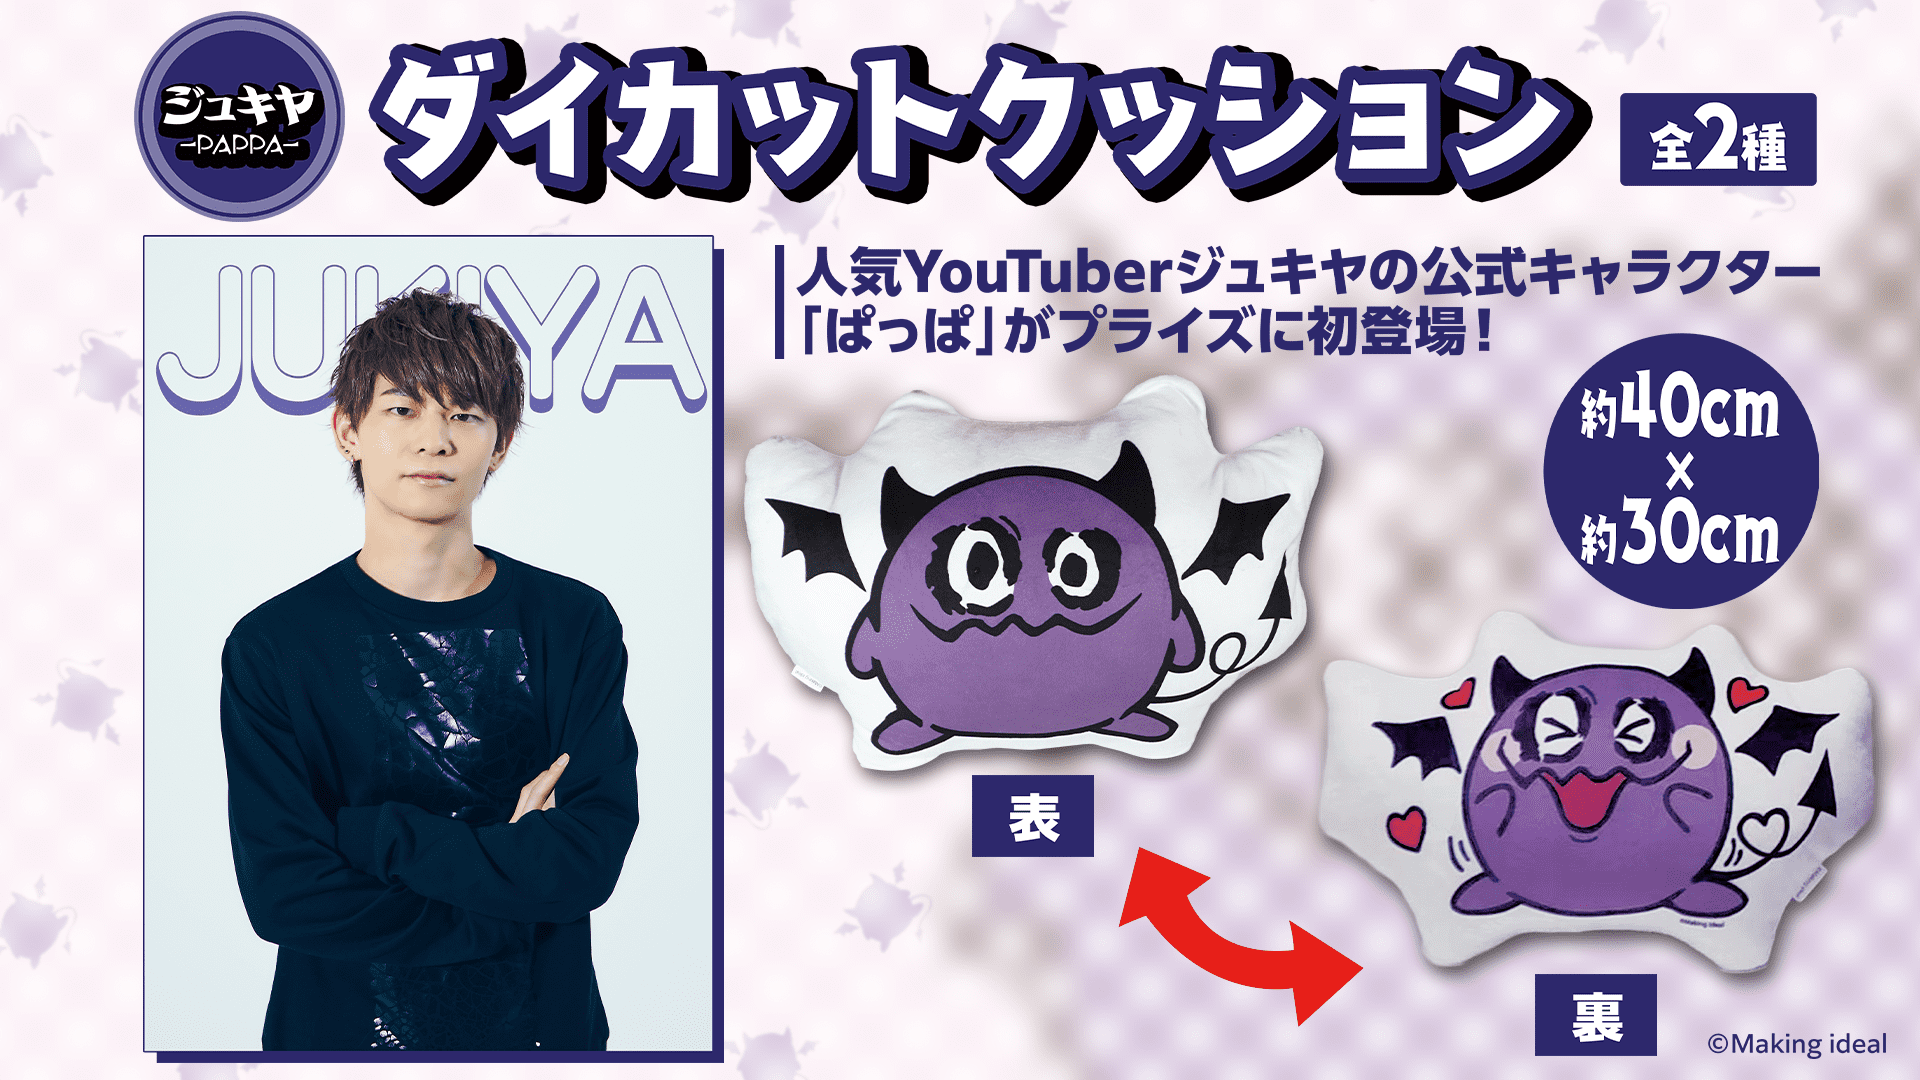 人気YouTuber ジュキヤさんのキャラクター”ぱっぱ”初のオリジナル